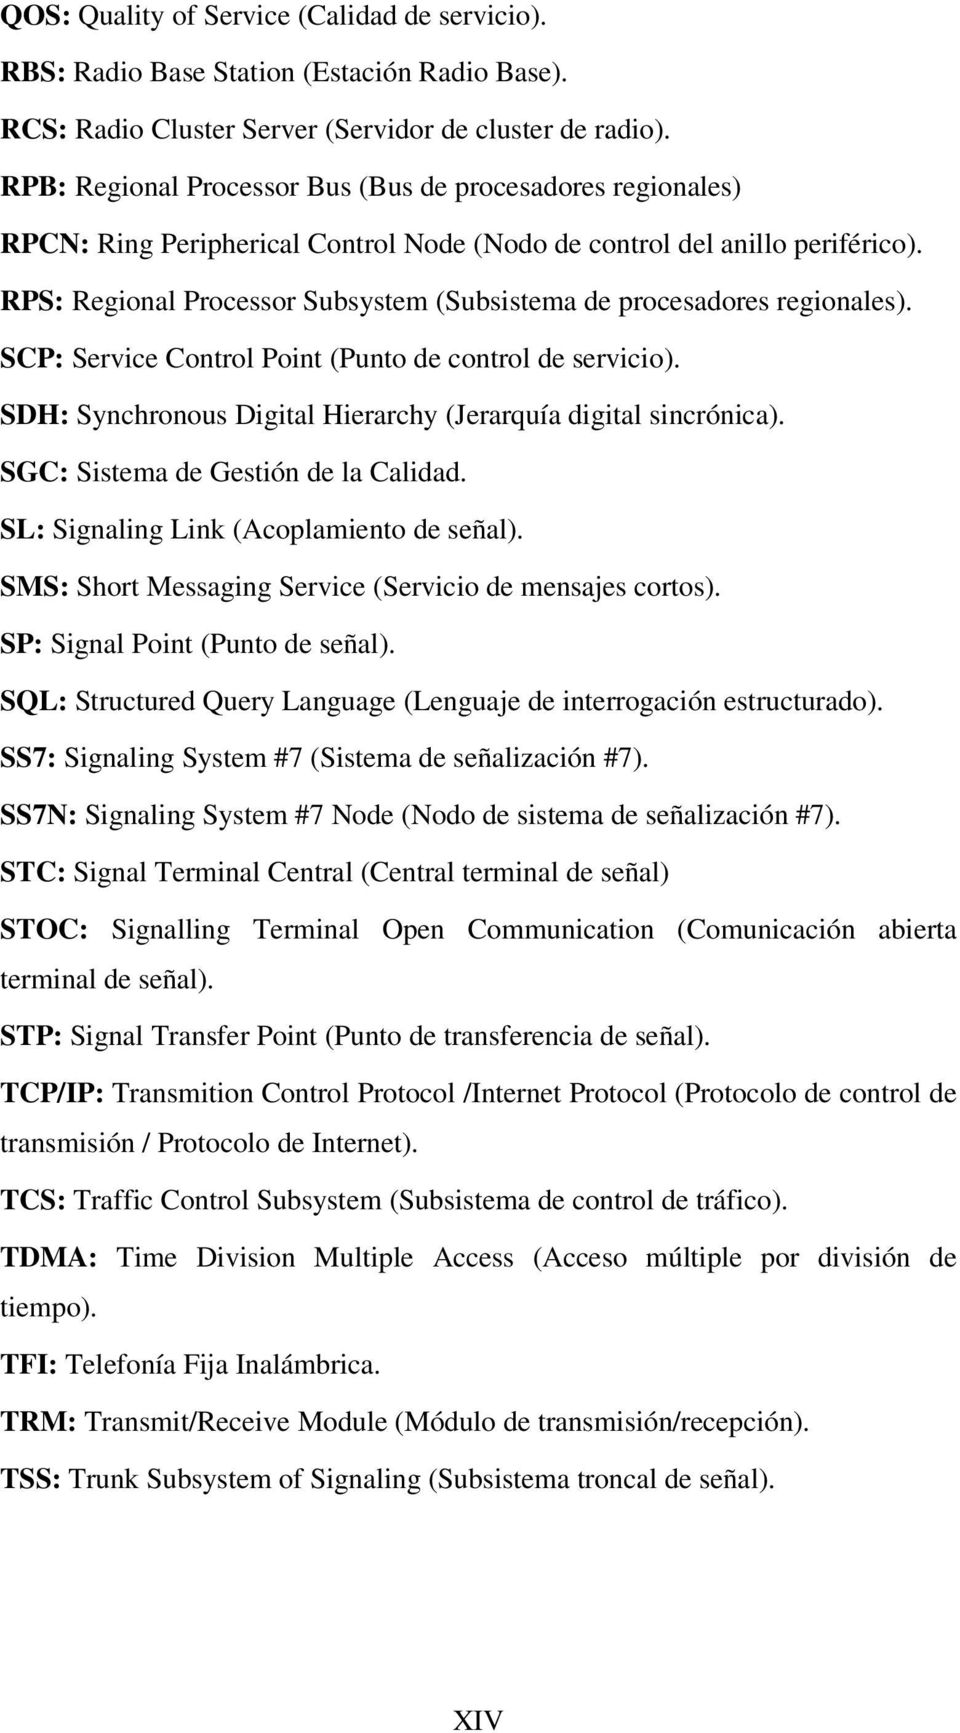 RPS: Regional Processor Subsystem (Subsistema de procesadores regionales). SCP: Service Control Point (Punto de control de servicio). SDH: Synchronous Digital Hierarchy (Jerarquía digital sincrónica).